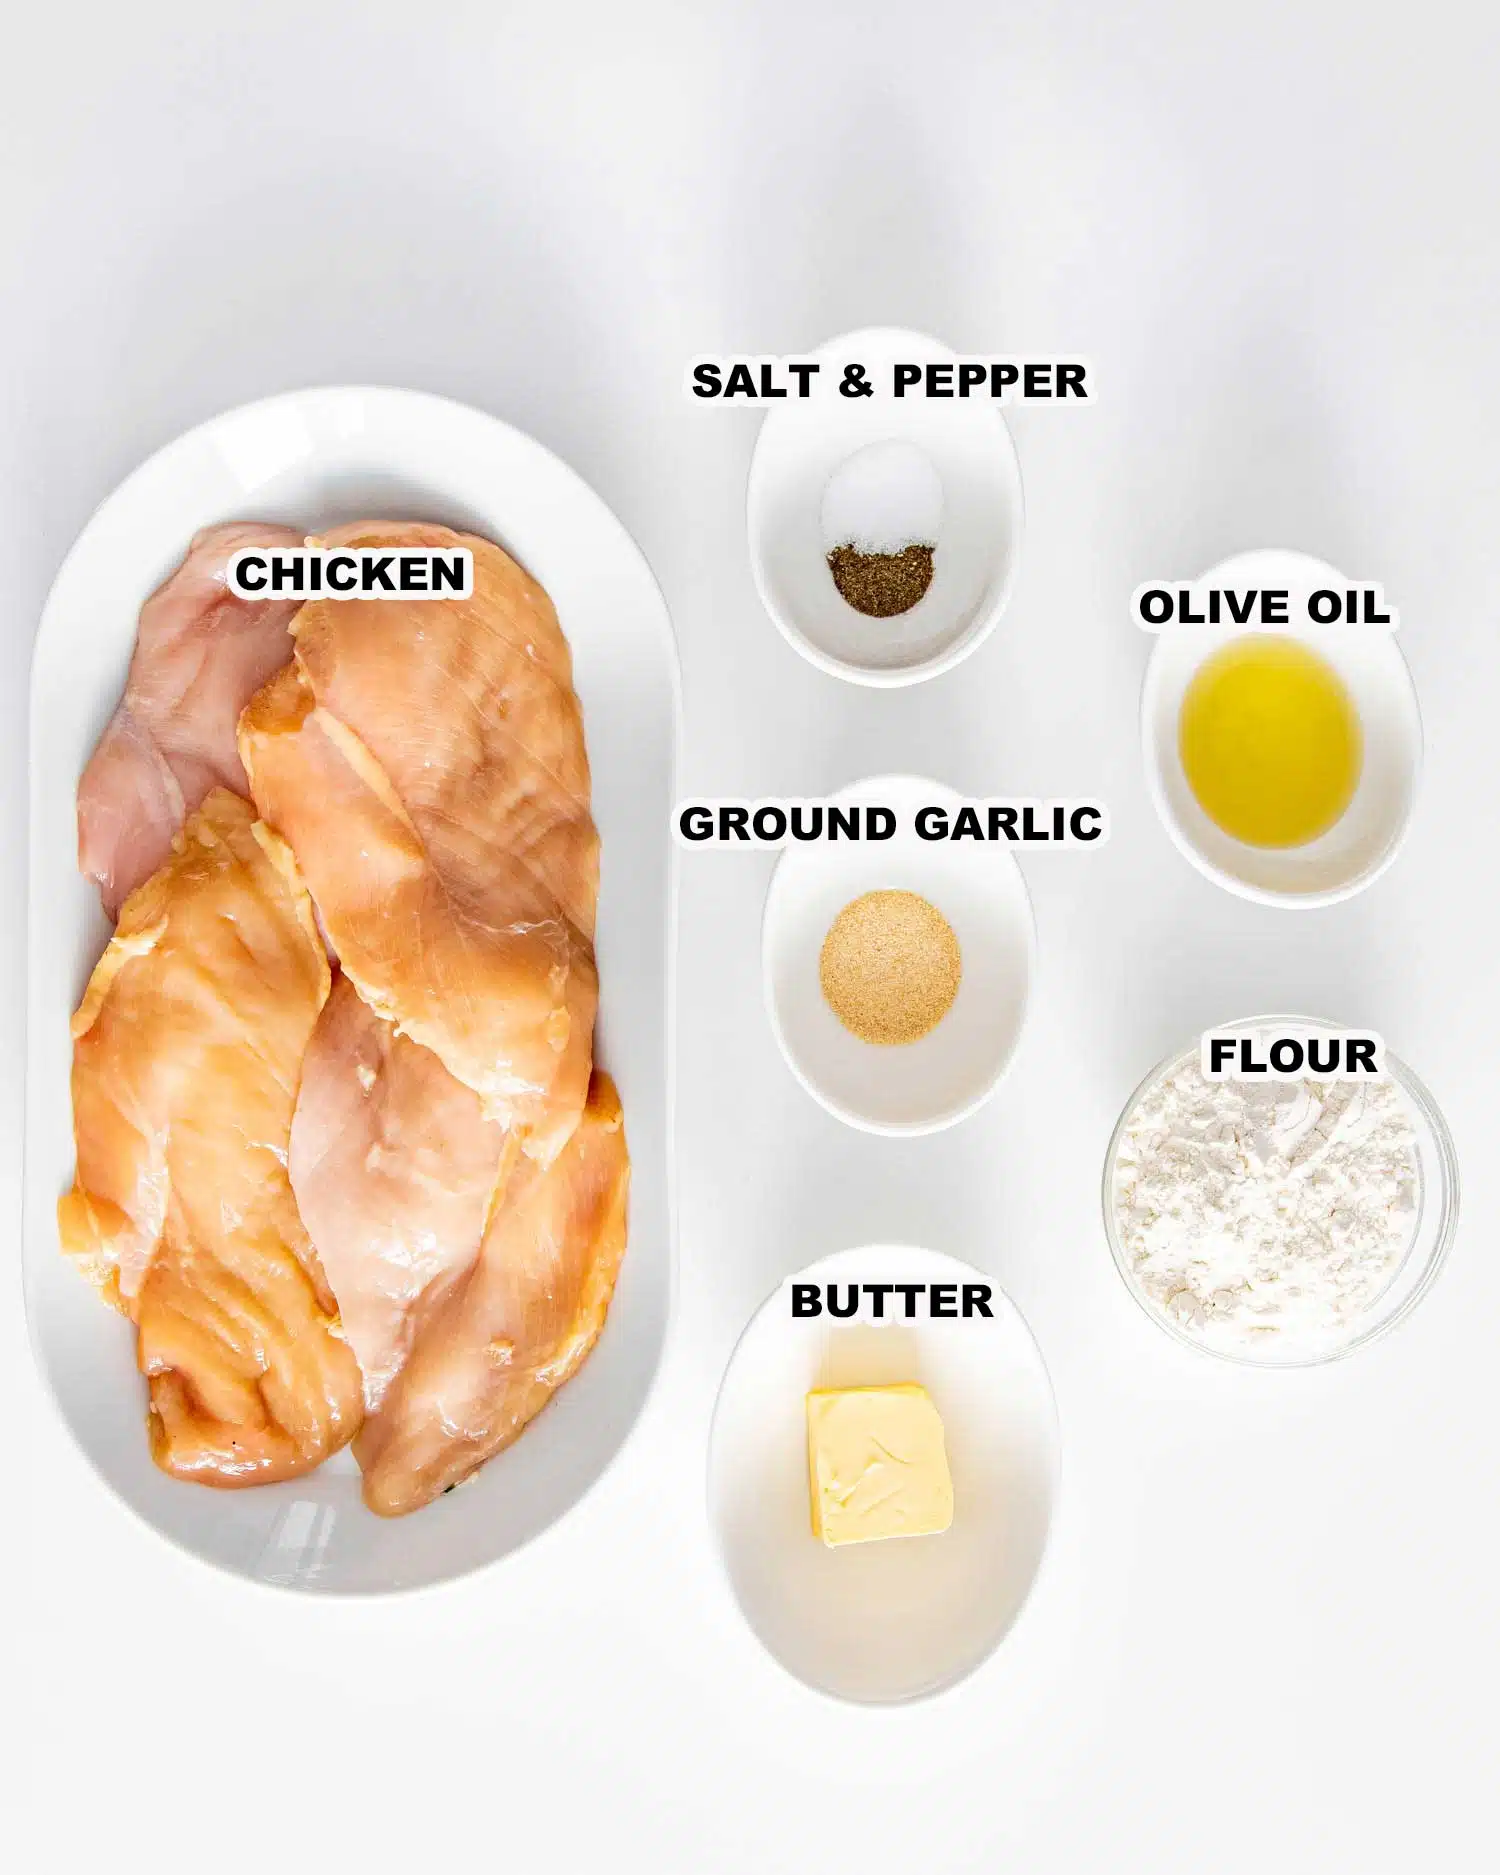 ingredients needed to make creamy garlic mushroom chicken.